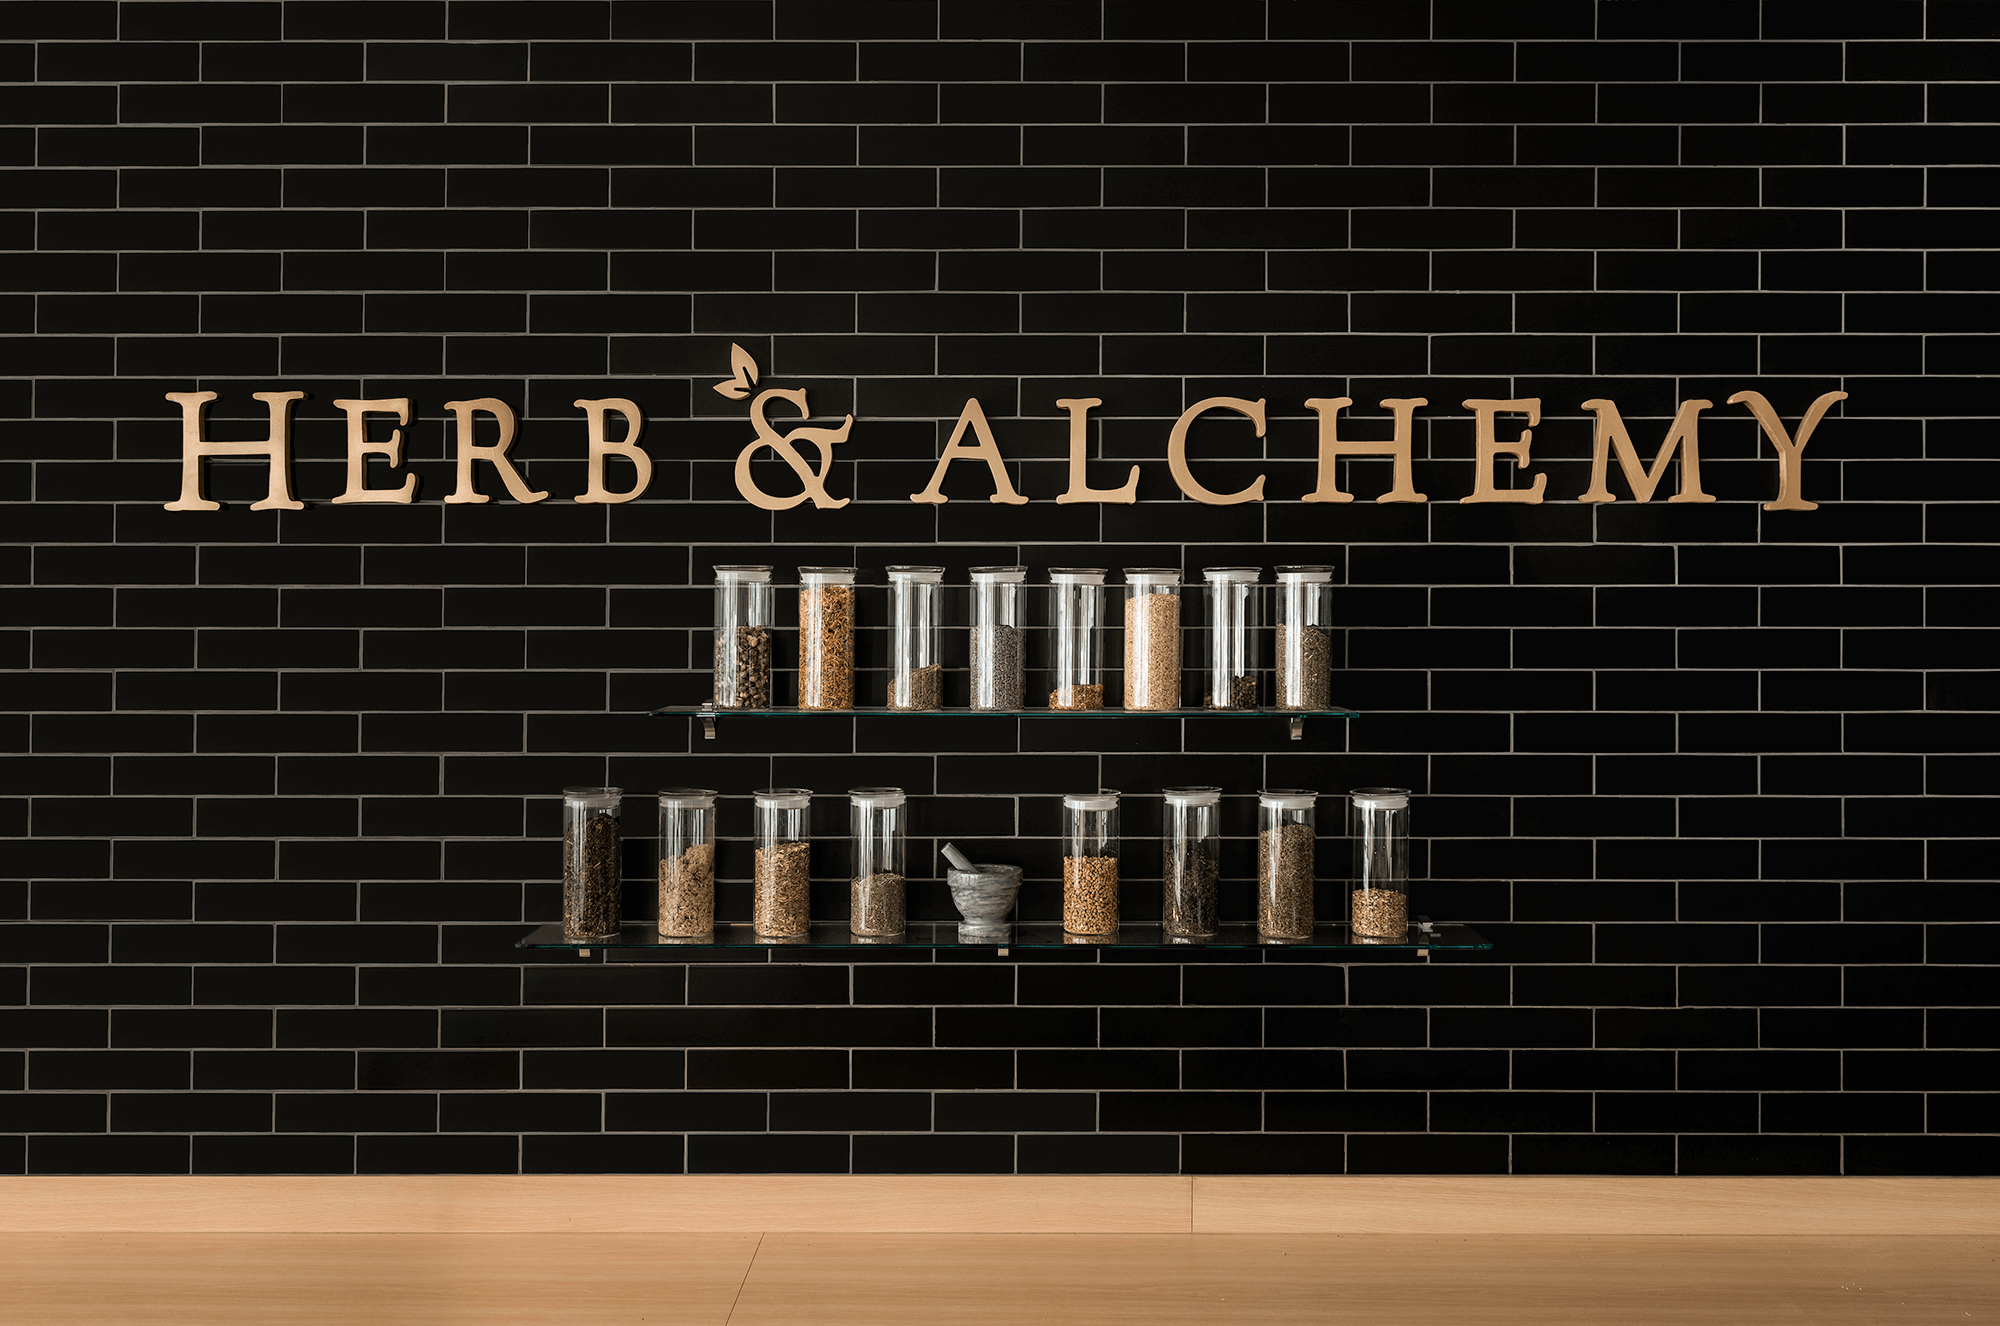 Herb & Alchemy interior design